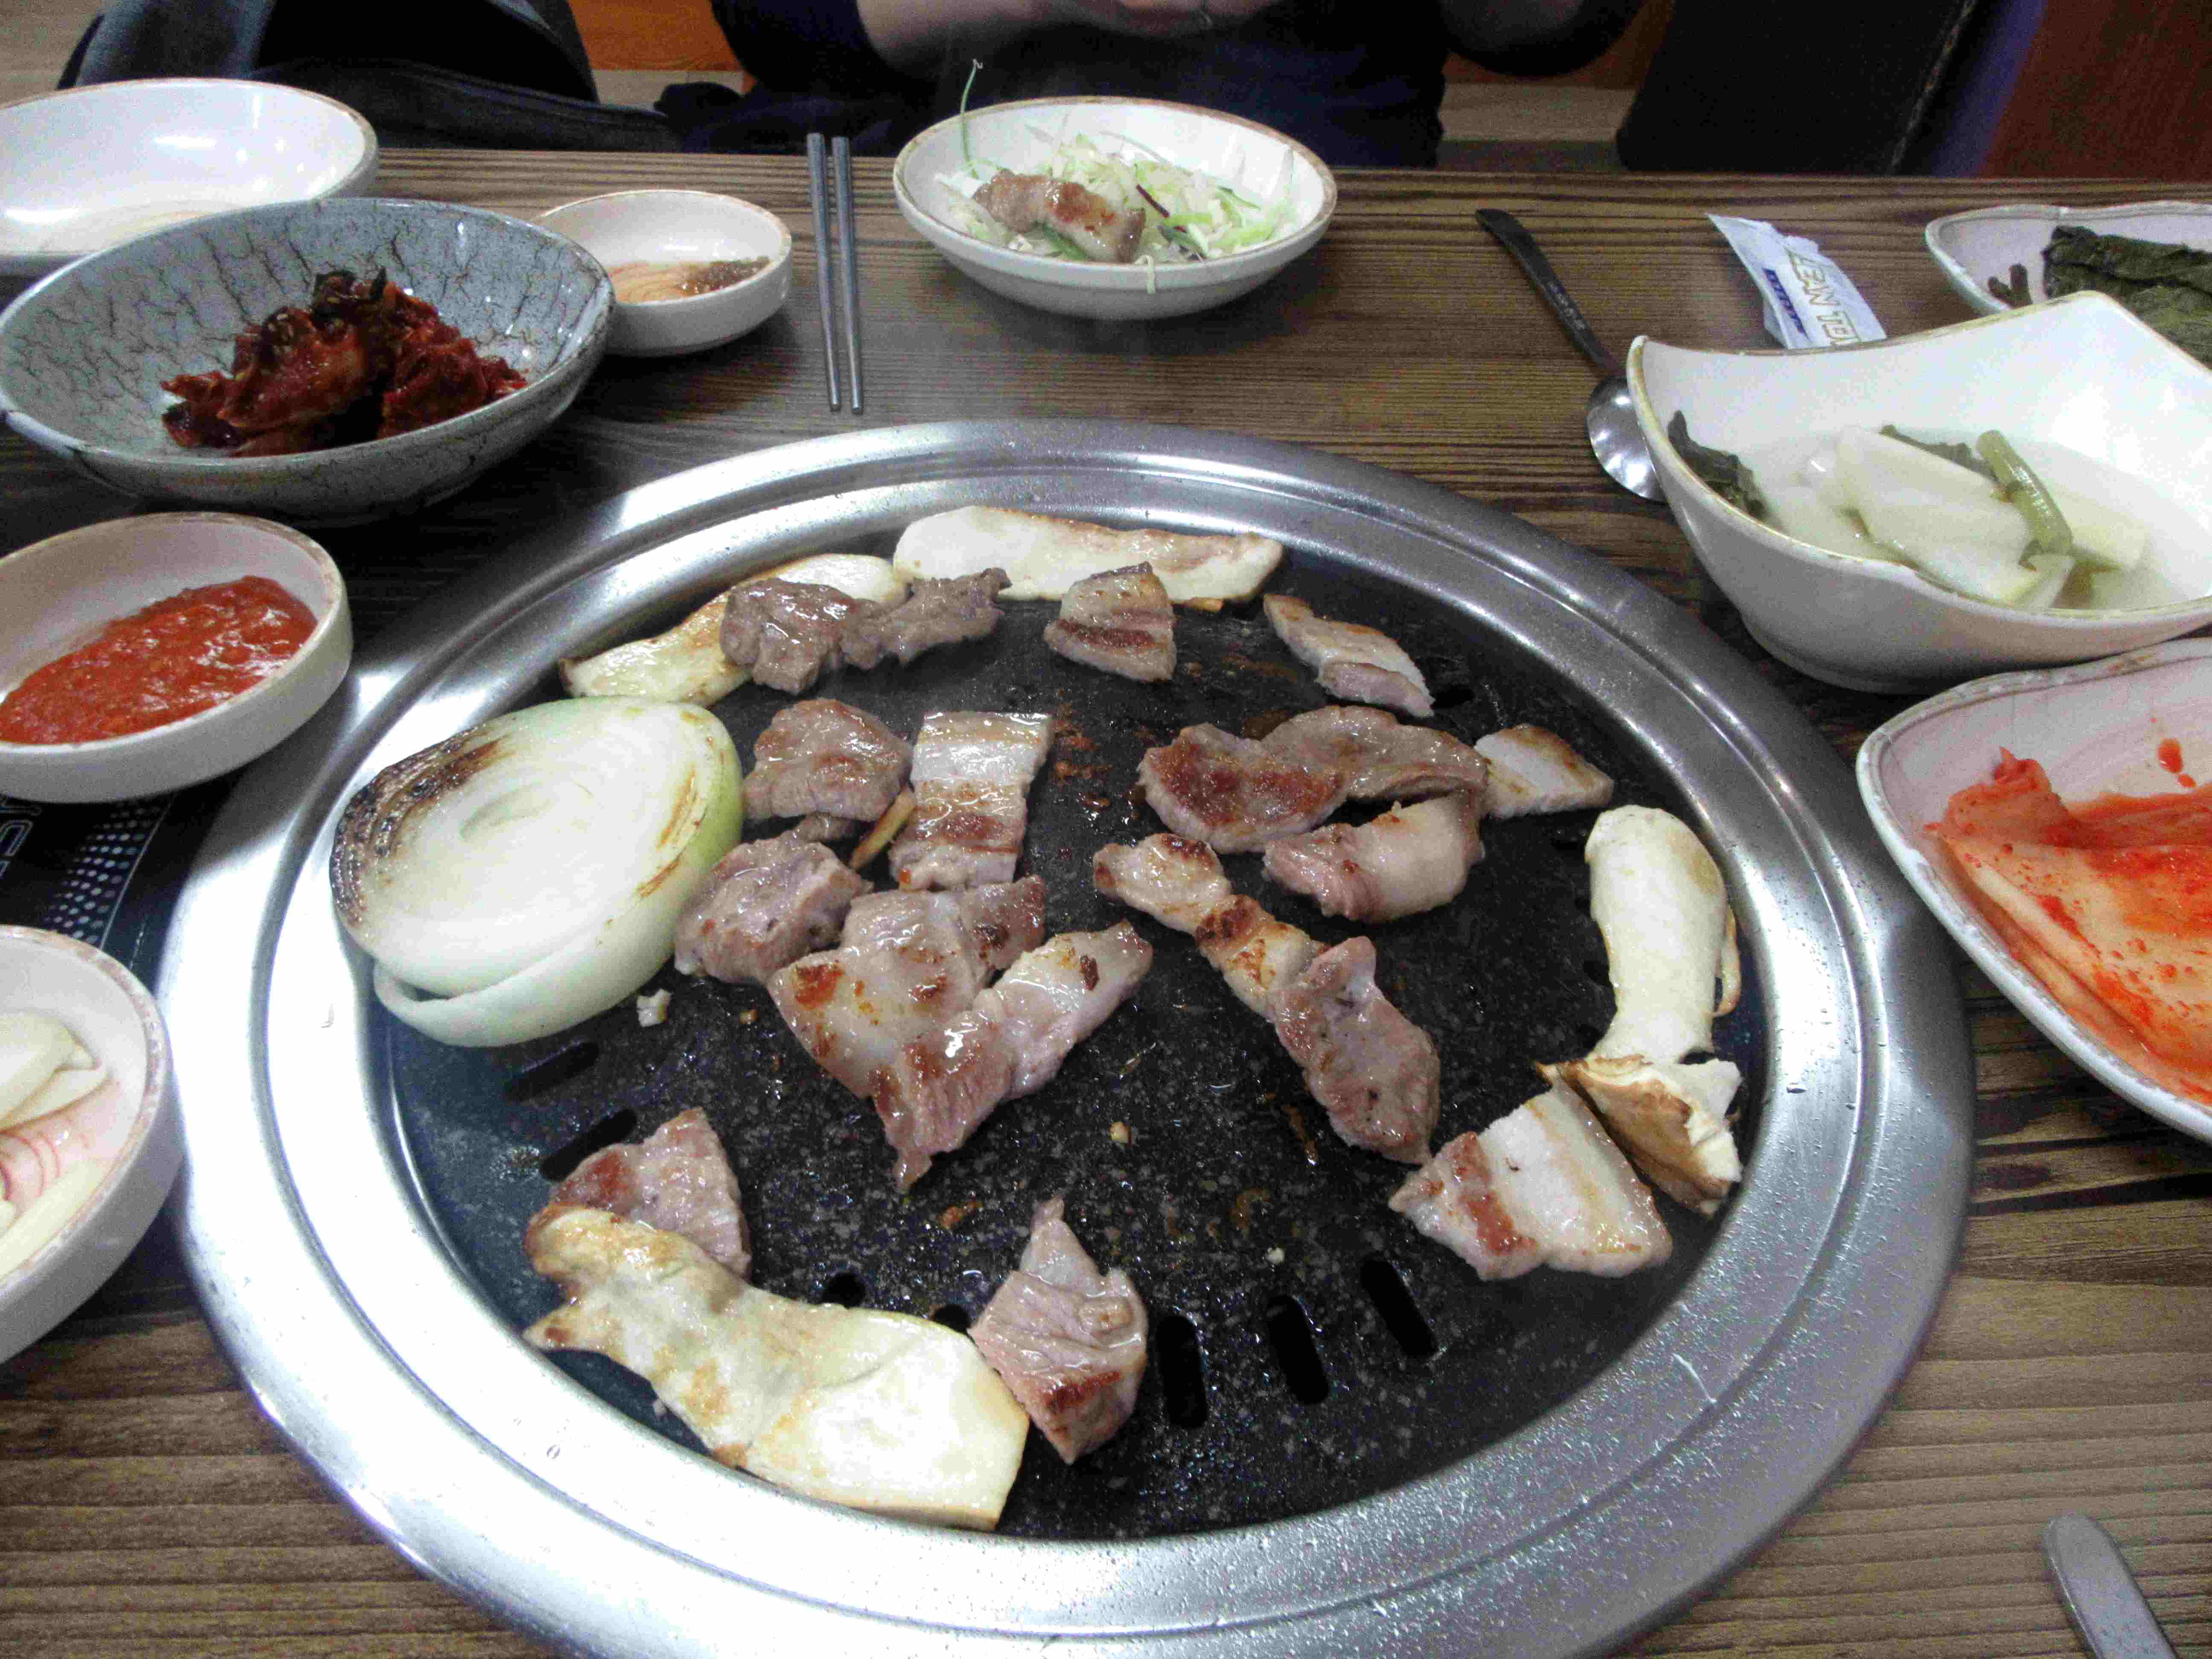 Destination Corée  6 Ingrédients typiques de la Cuisine coréenne